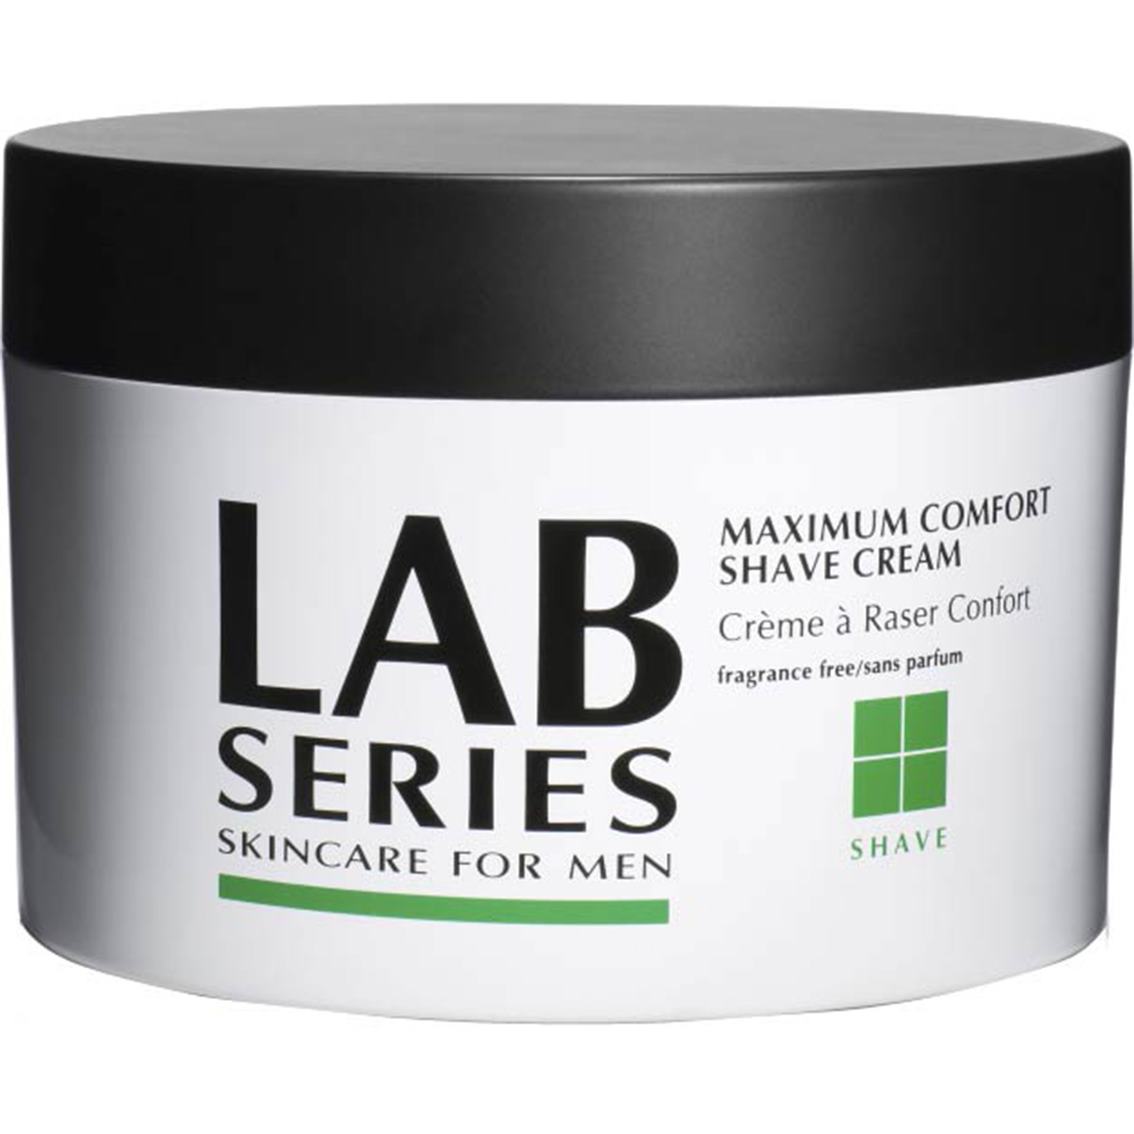 LAB Series- Maximum Comfort Shave Cream